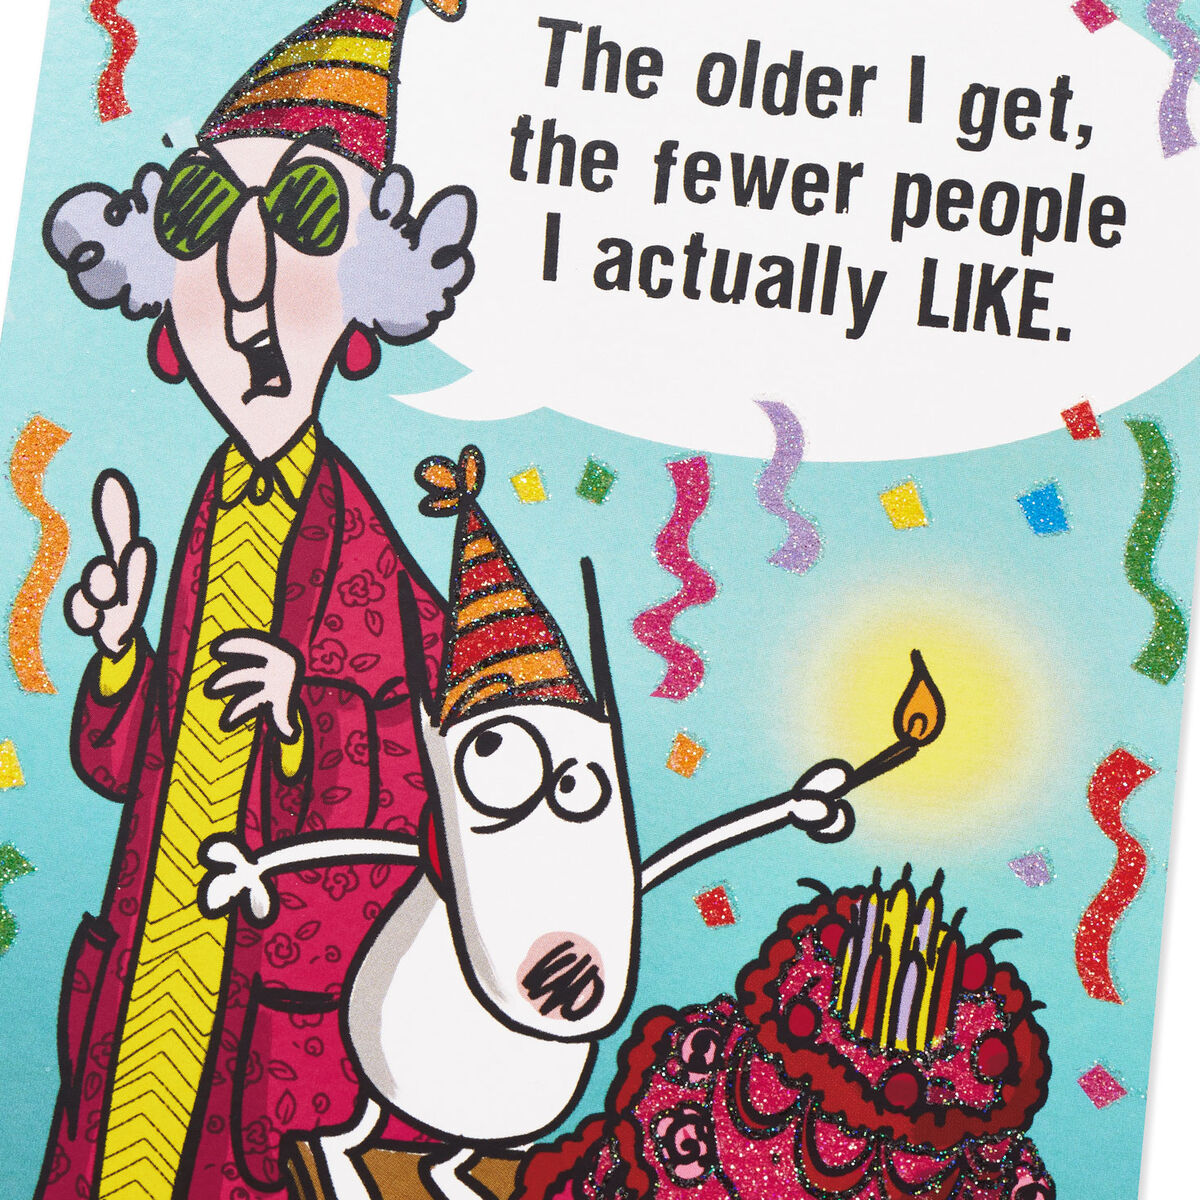 Funny Birthday Cards Free Printable - Printable World Holiday